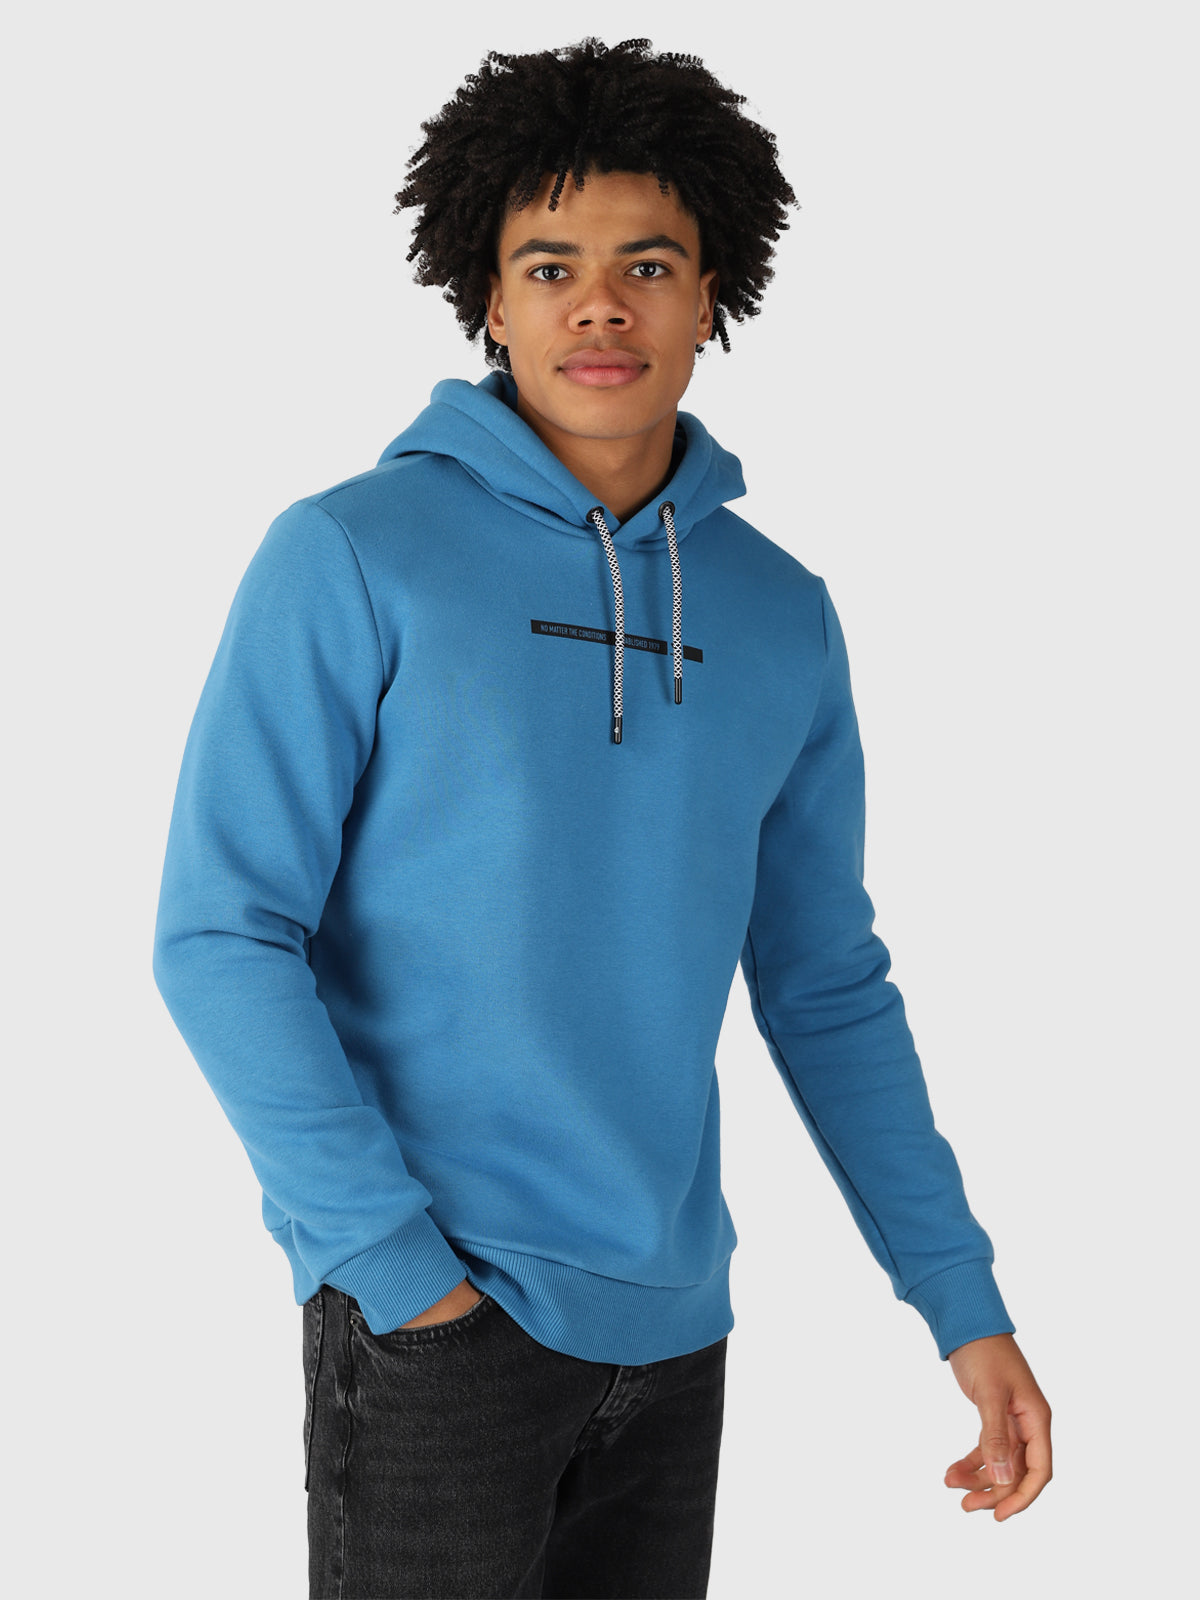 Rontcher Herren Sweatshirt | Blau